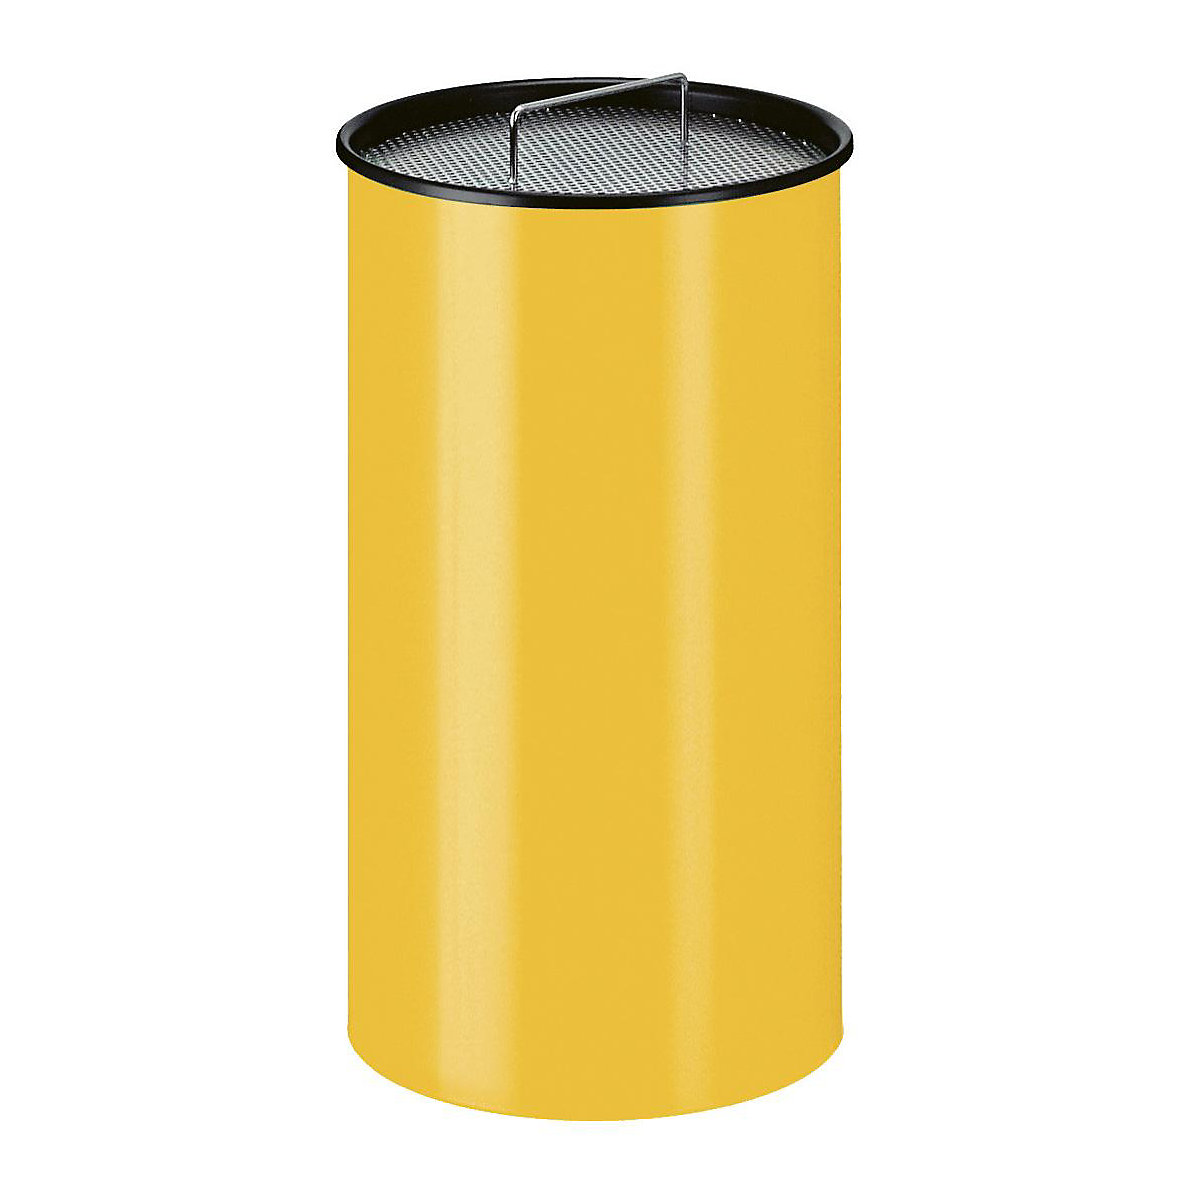 Stojeća pepeljara s pijeskom, okrugla izvedba, sa sitom, u žutoj boji-6